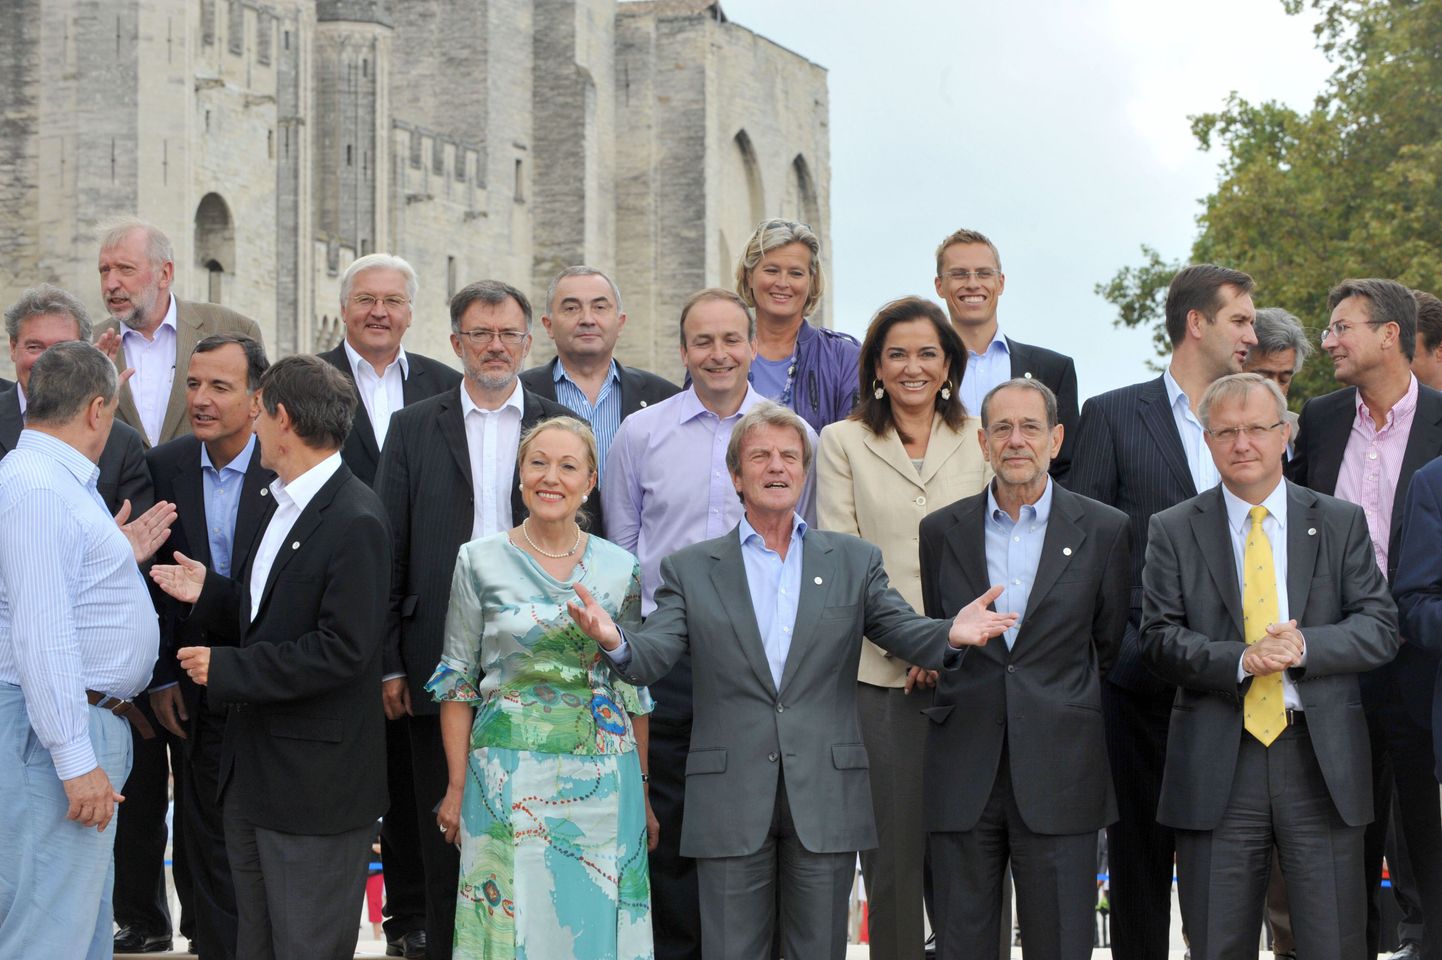 Euroopa Liidu välisministrite kohtumine nn «Gymnich», mis on oma nime saanud Bonni lähedal asuva Gymnichi lossi järgi, kus toimus esimene sarnane kokkusaamine.